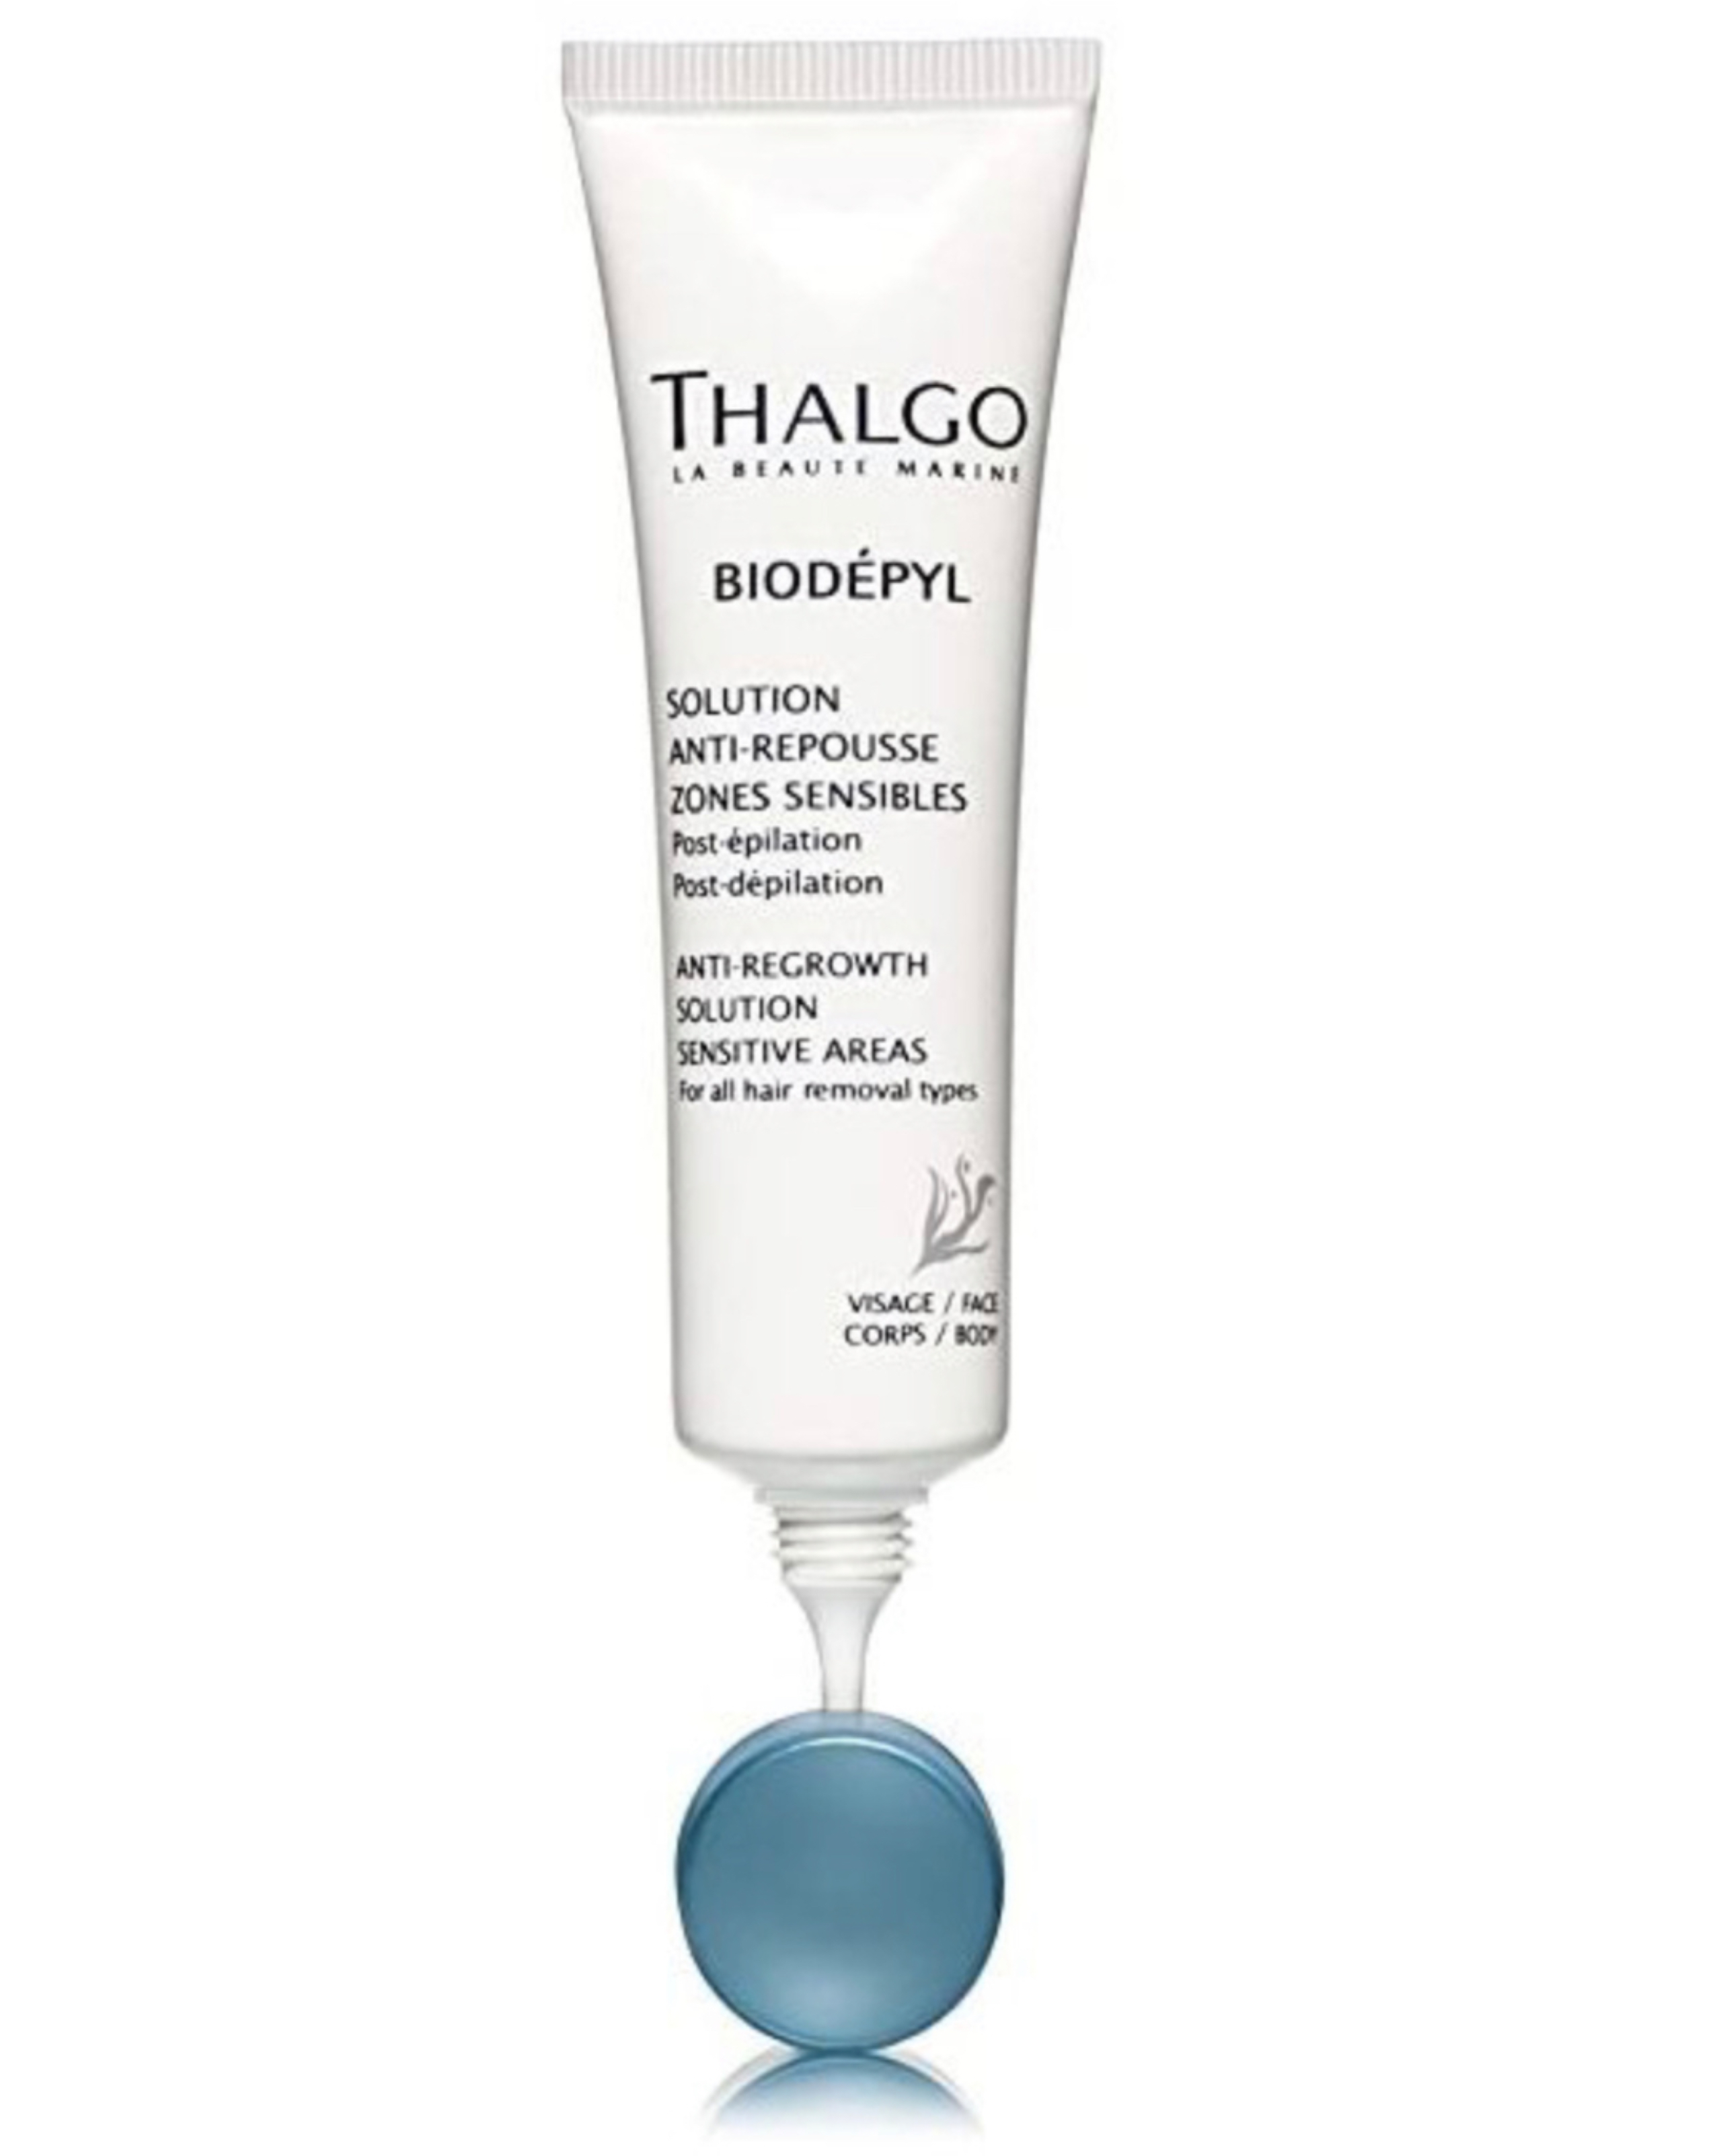 Thalgo Biodepyl